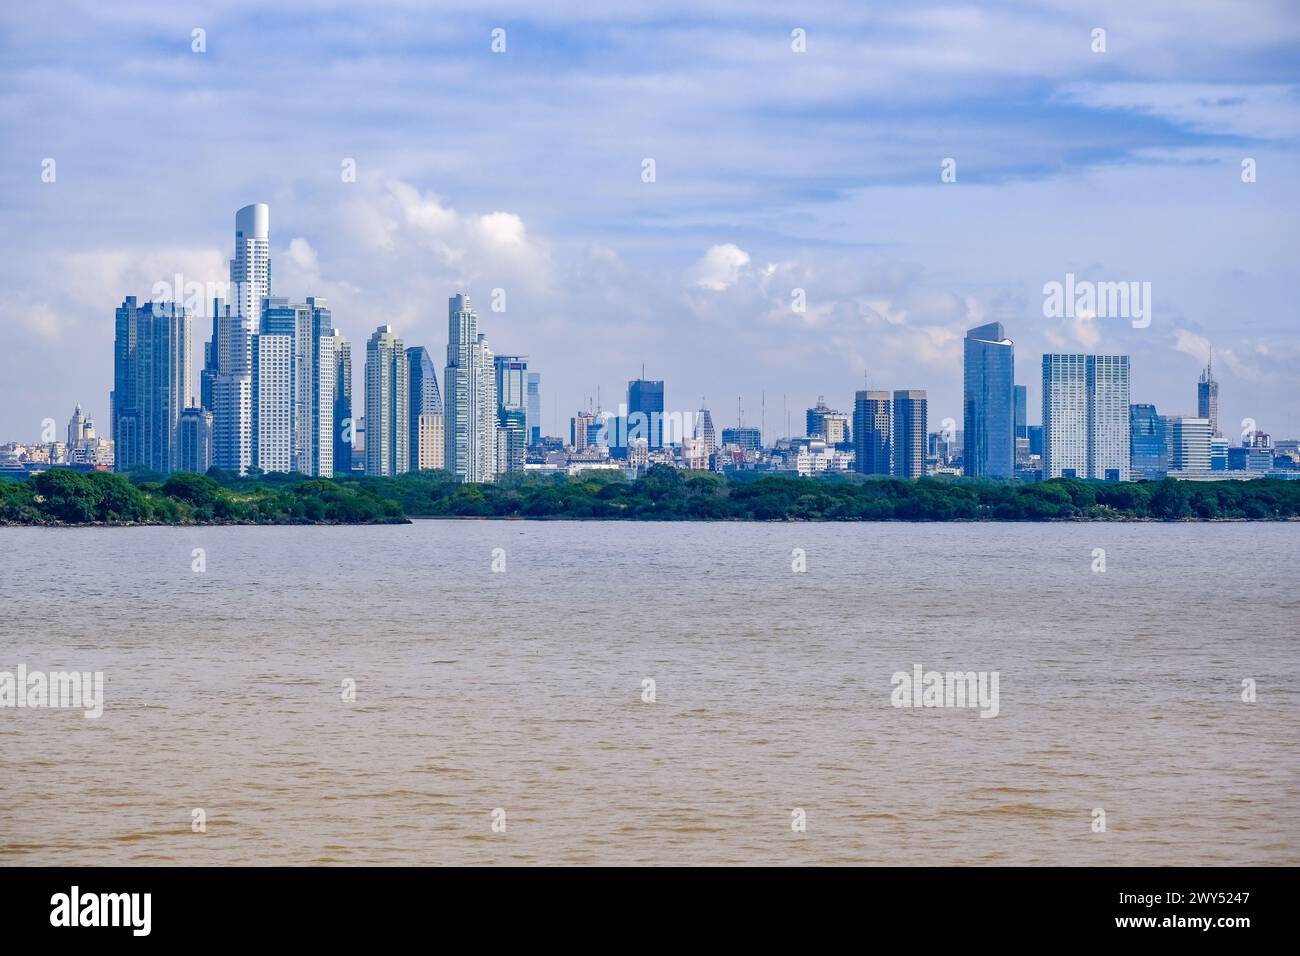 Buenos Aires, Argentinien - Skyline of Buenos Aires am Rio de la Plata. Stock Photo